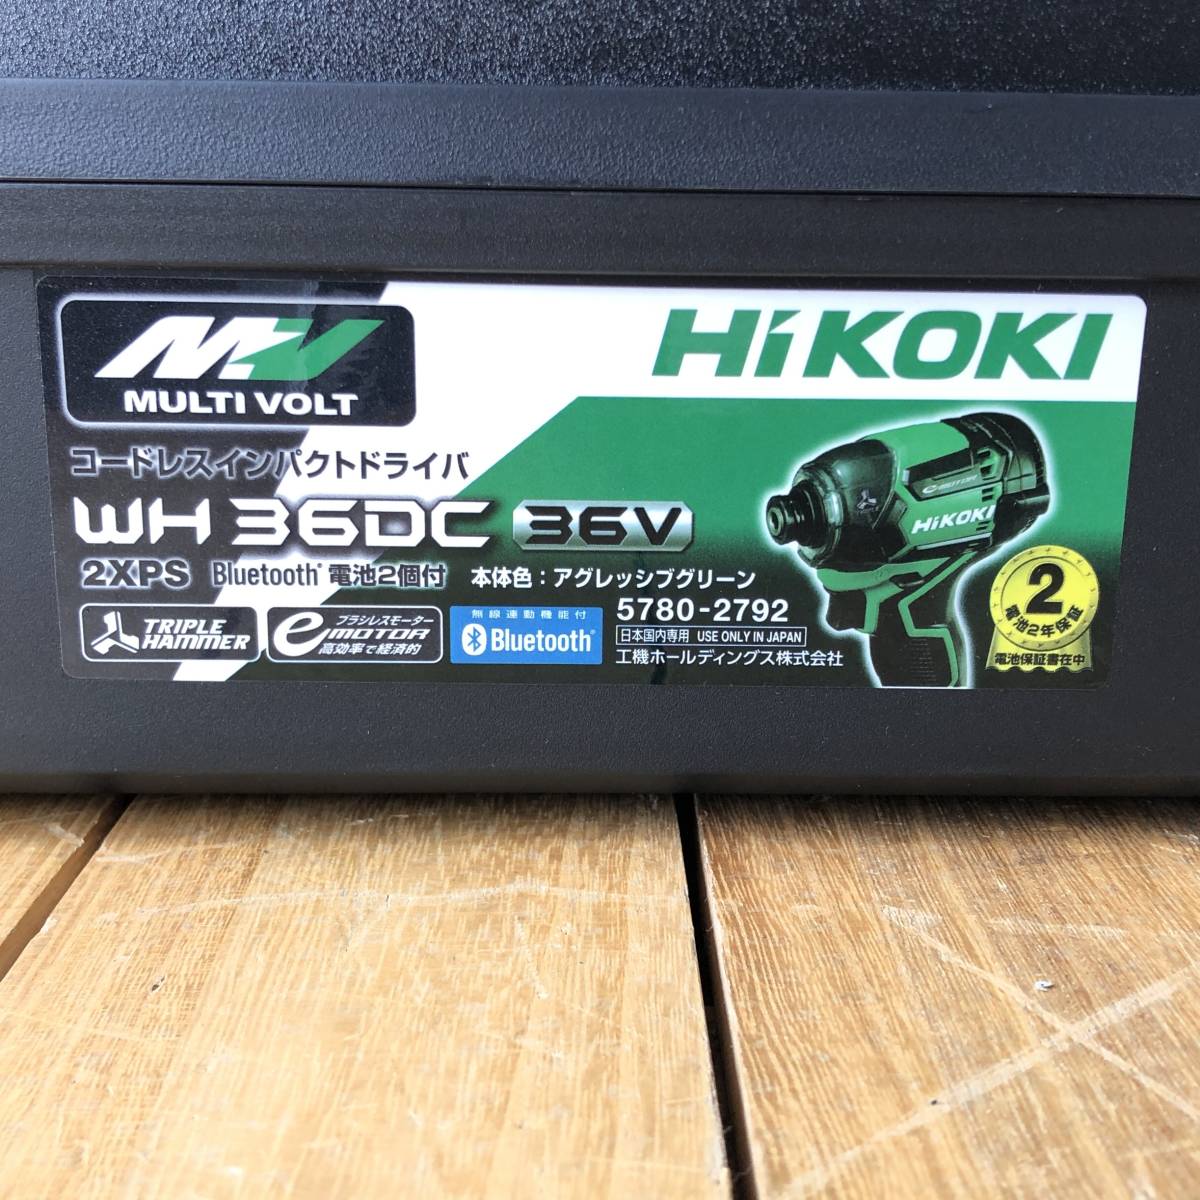 ▼【新品/未使用】HiKOKI WH36DC 36V (2XPS) コードレスインパクトドライバ Bluetooth対応 ハイコーキ 日立 バッテリー/充電器/ケース付き_画像2